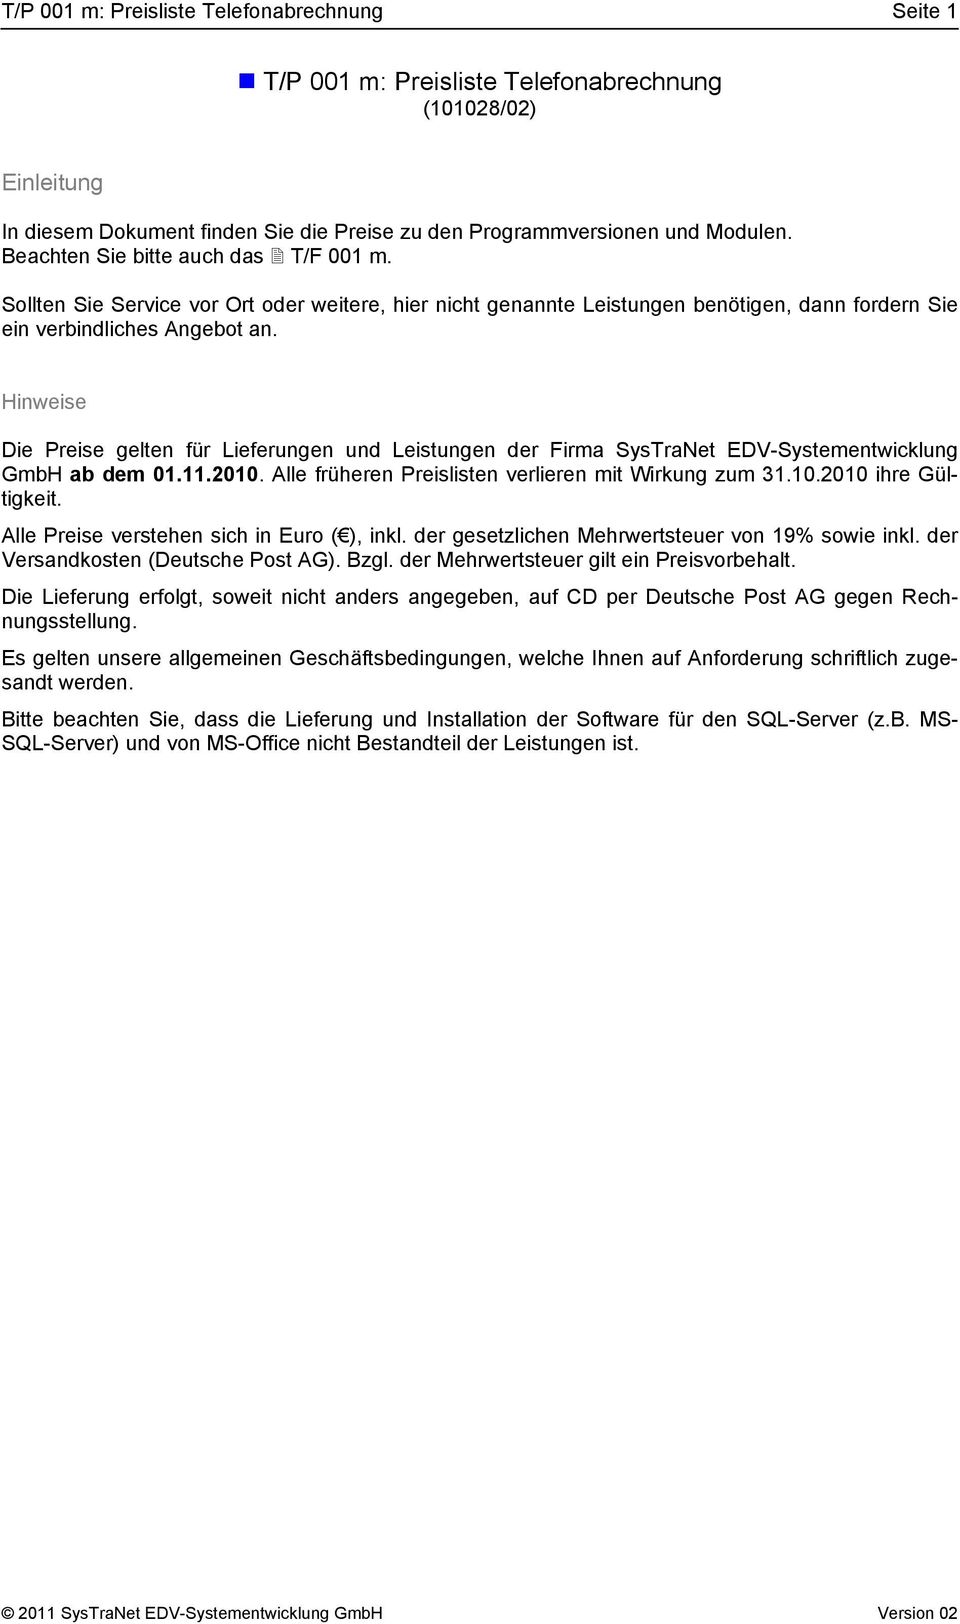 Hinweise Die Preise gelten für Lieferungen und Leistungen der Firma SysTraNet EDV-Systementwicklung GmbH ab dem 01.11.2010. Alle früheren Preislisten verlieren mit Wirkung zum 31.10.2010 ihre Gültigkeit.